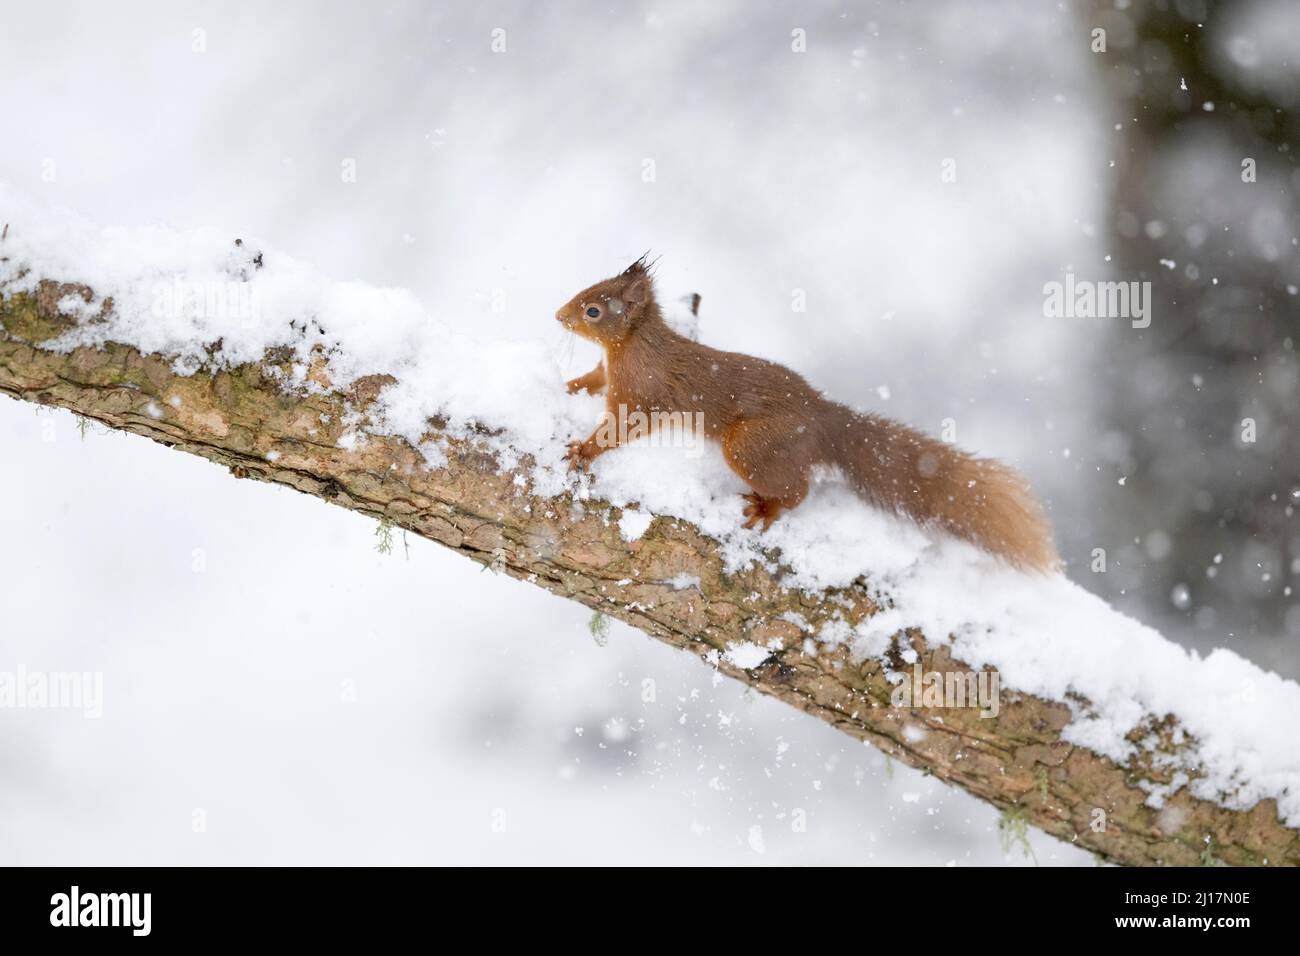 Red squirrel (Sciurus vulgaris) climbing snow-covered branch Stock Photo